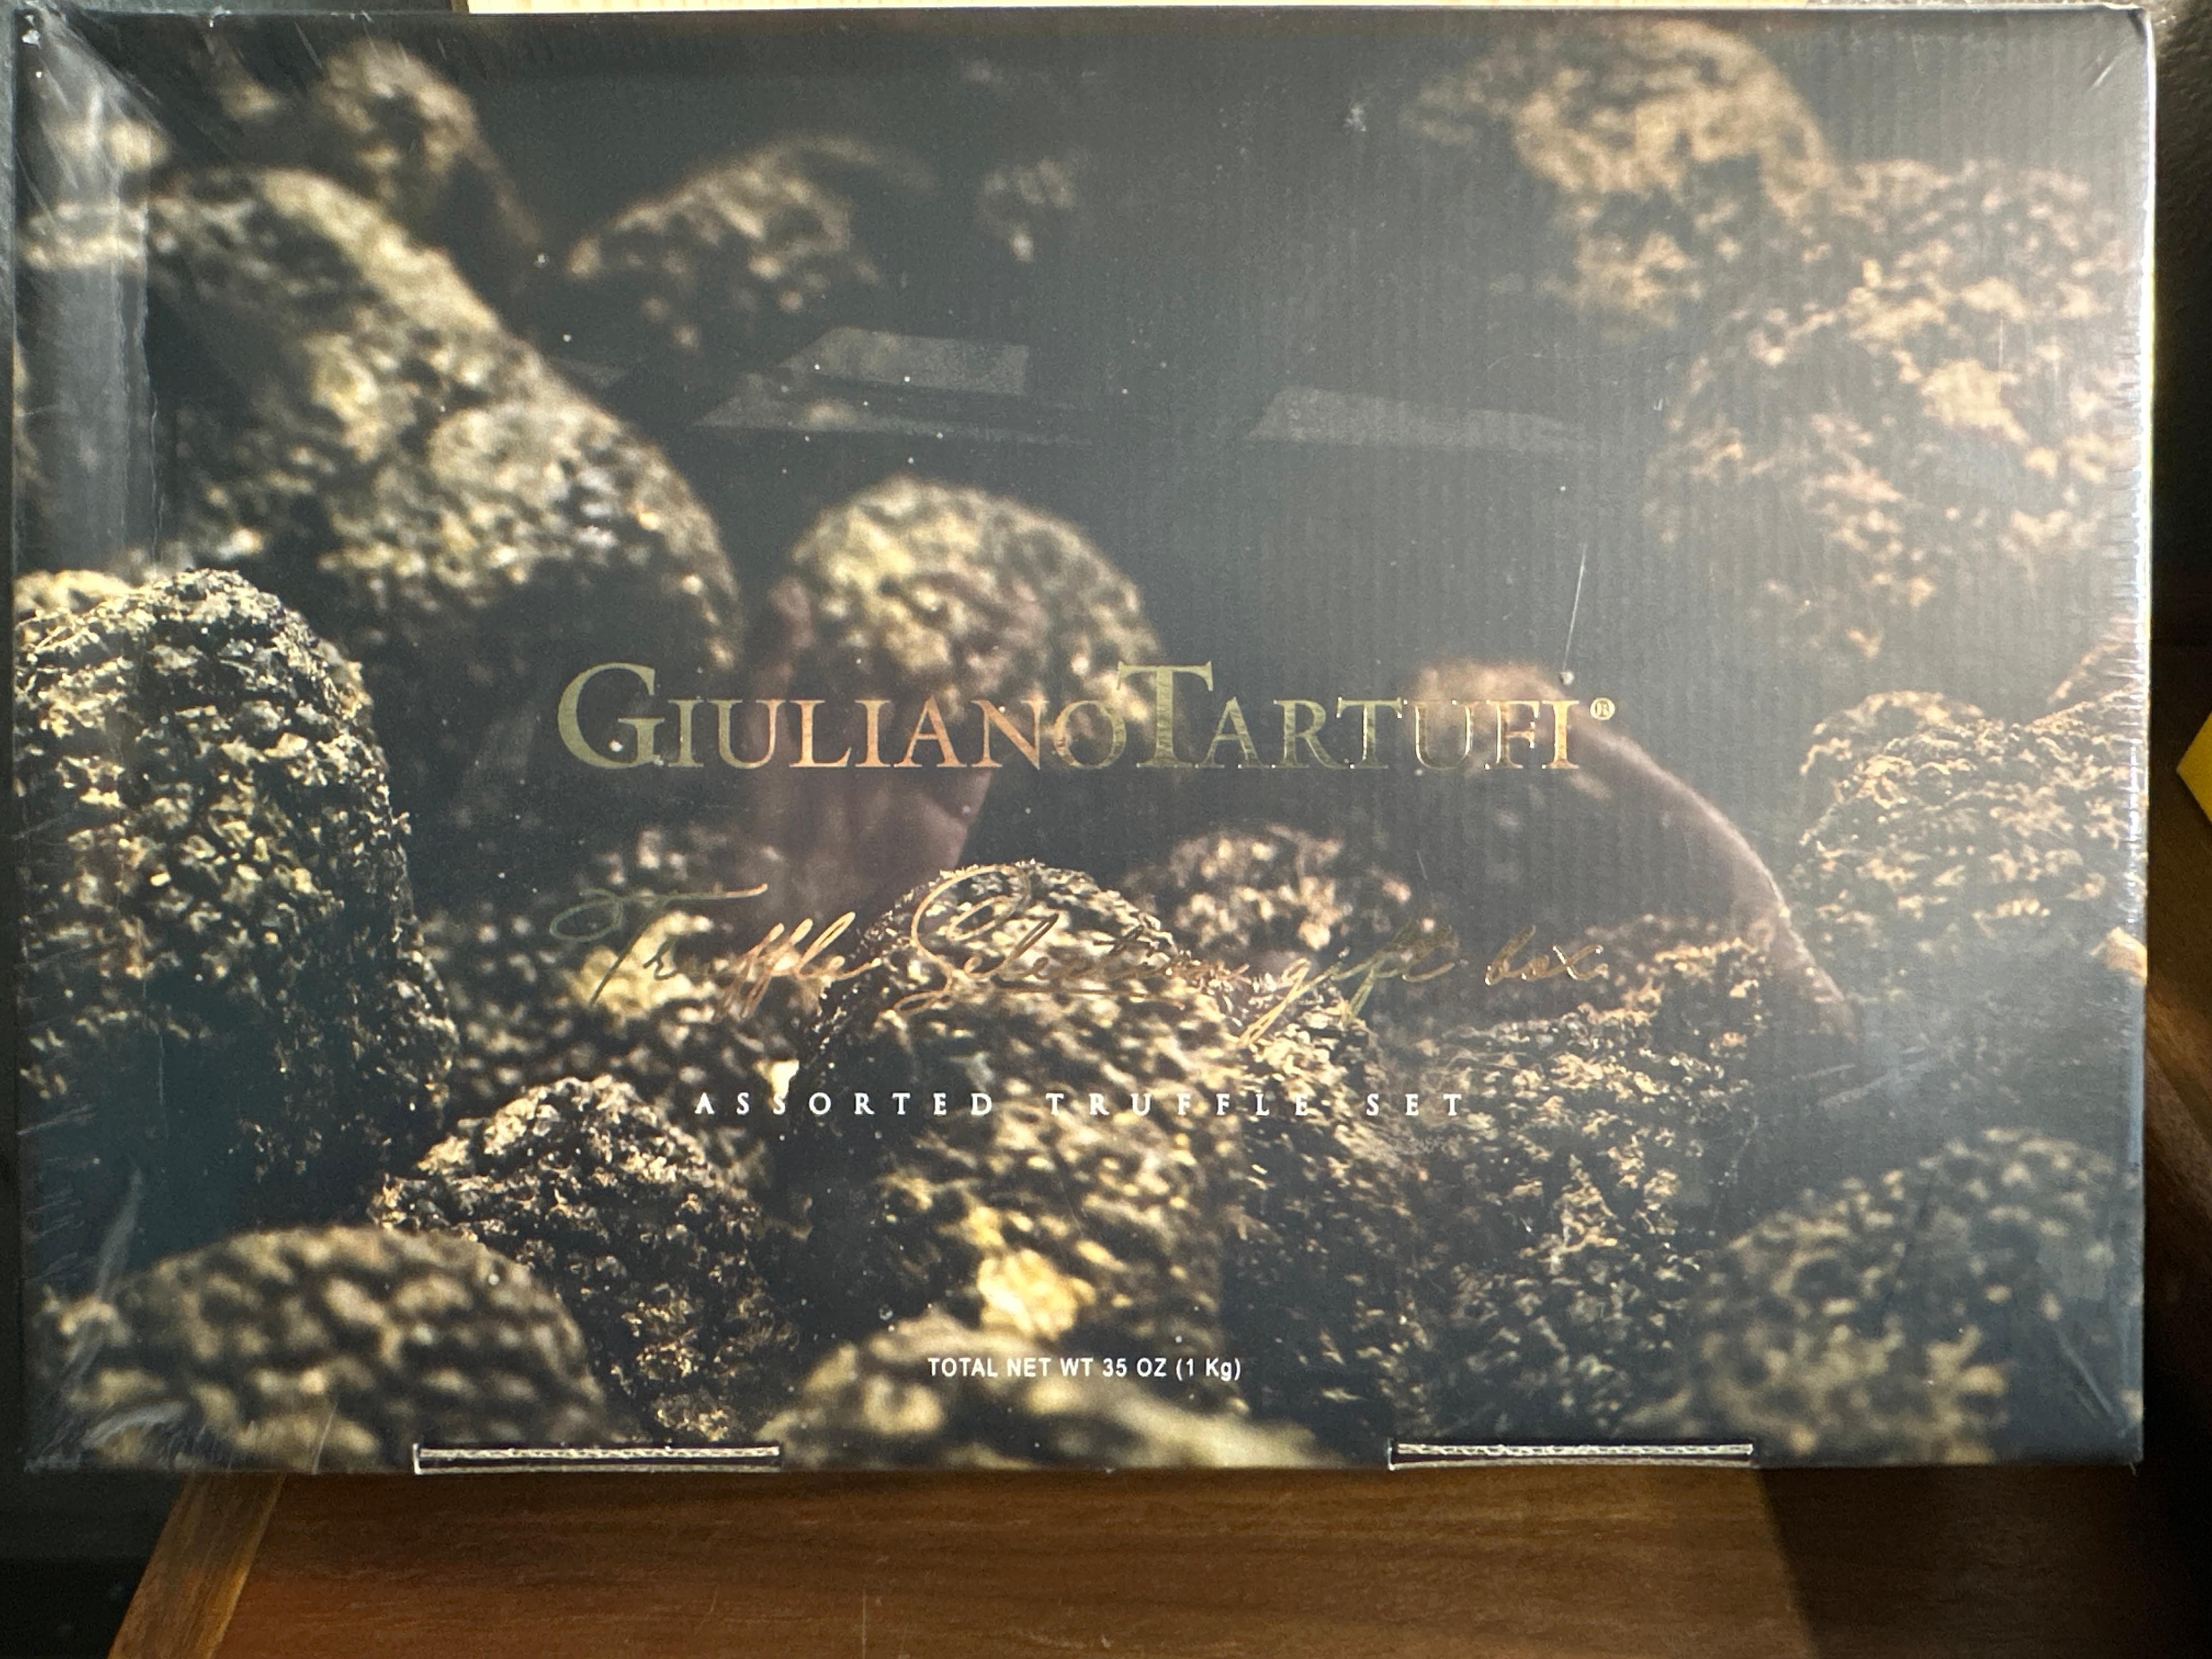 Giuliano Tartufi, Assorted Truffle Gift Set